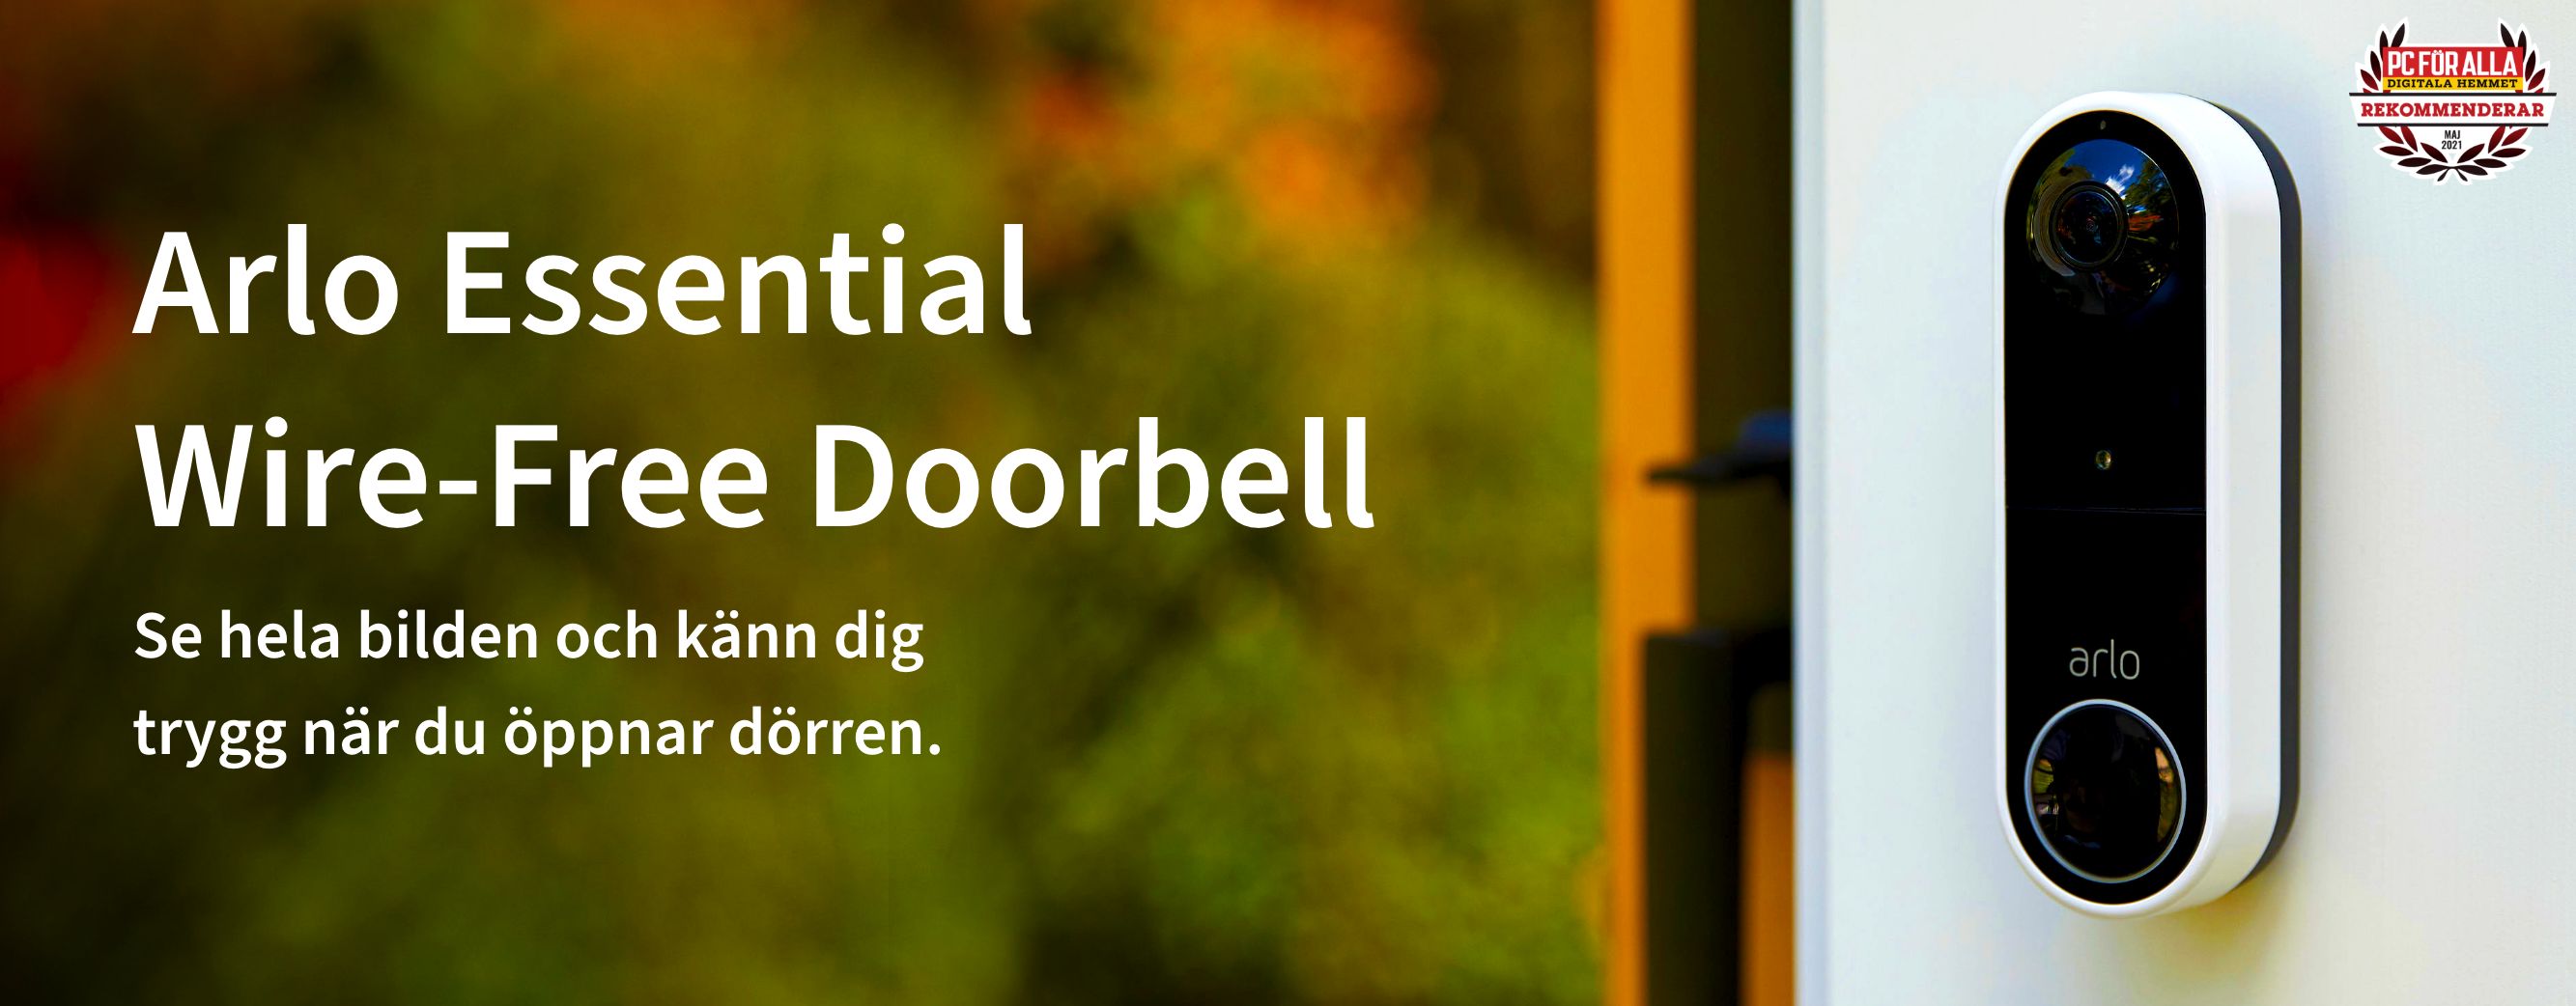 En Arlo trådlös dörrklocka på en dörr utanför ger dig självförtroende att öppna dörren, Reddot-vinnare 2021